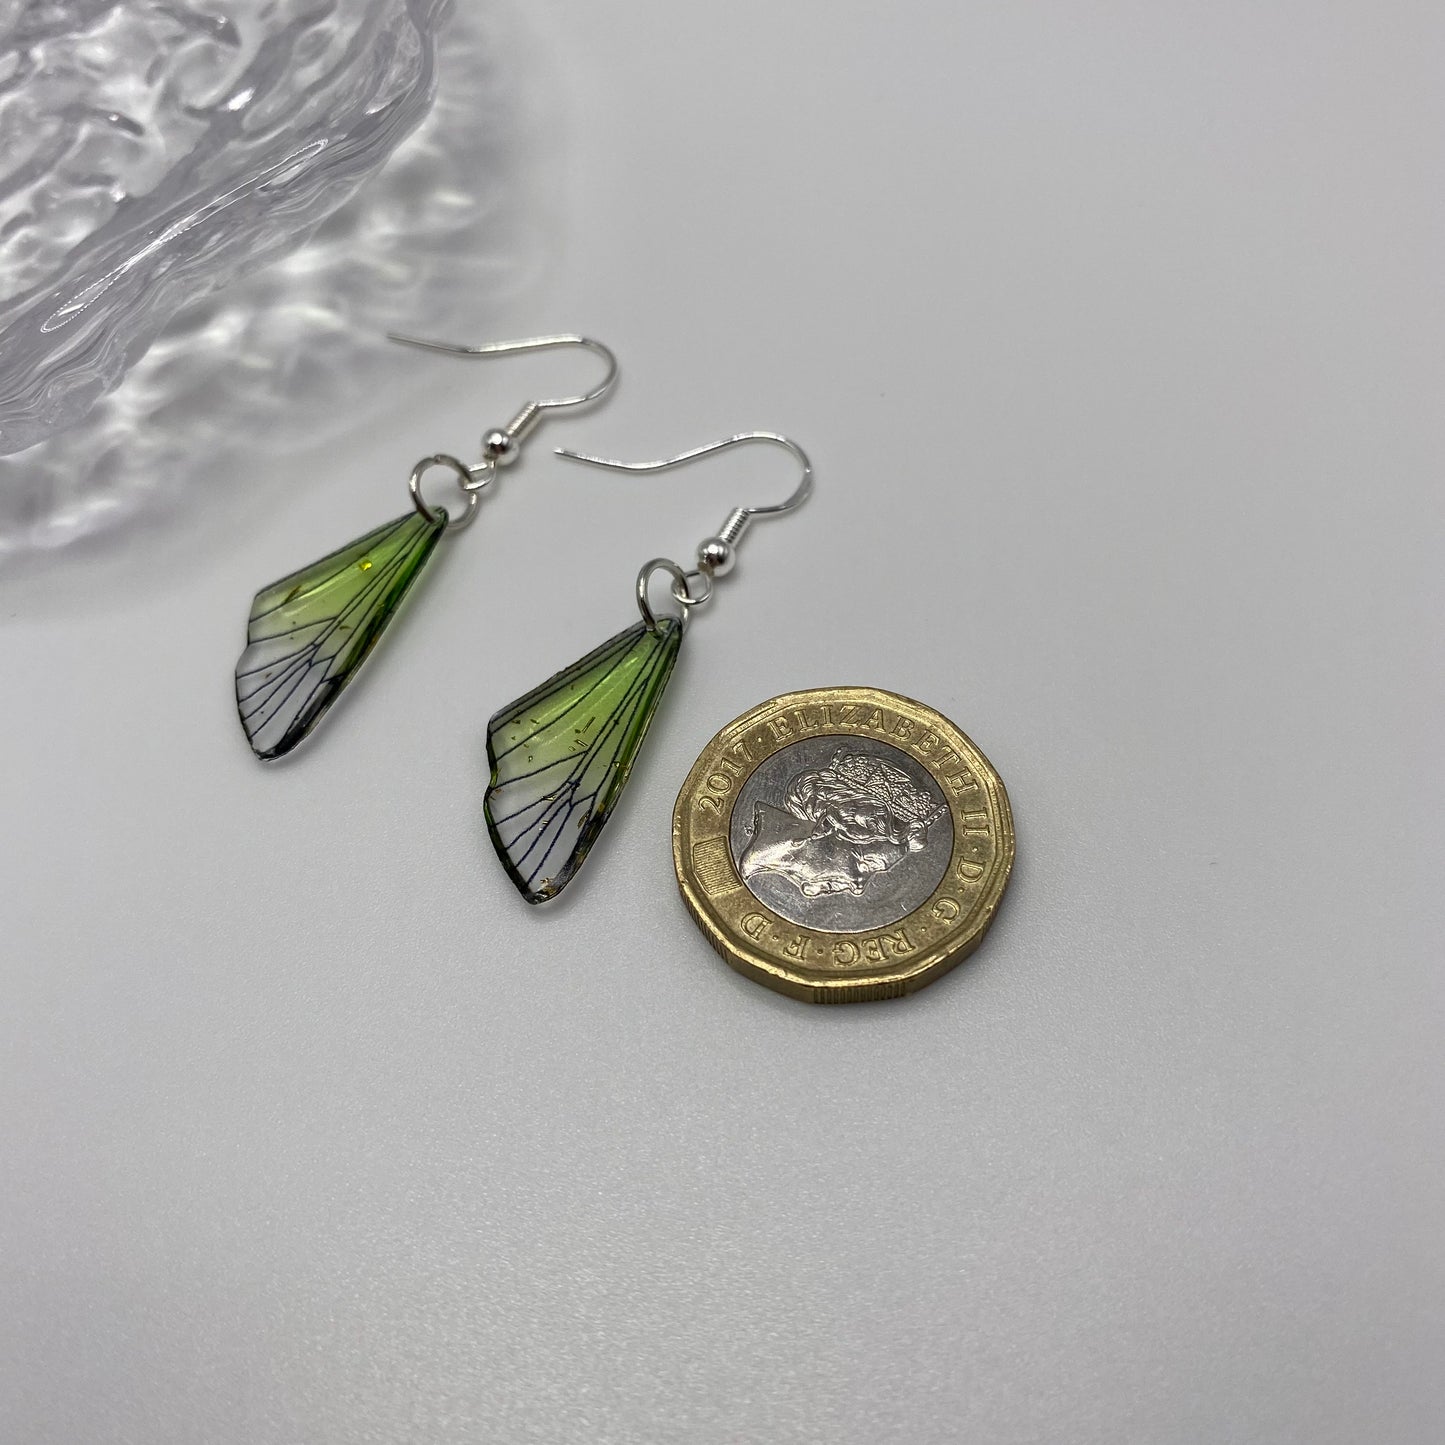 Small Green Fairy Wing Earrings